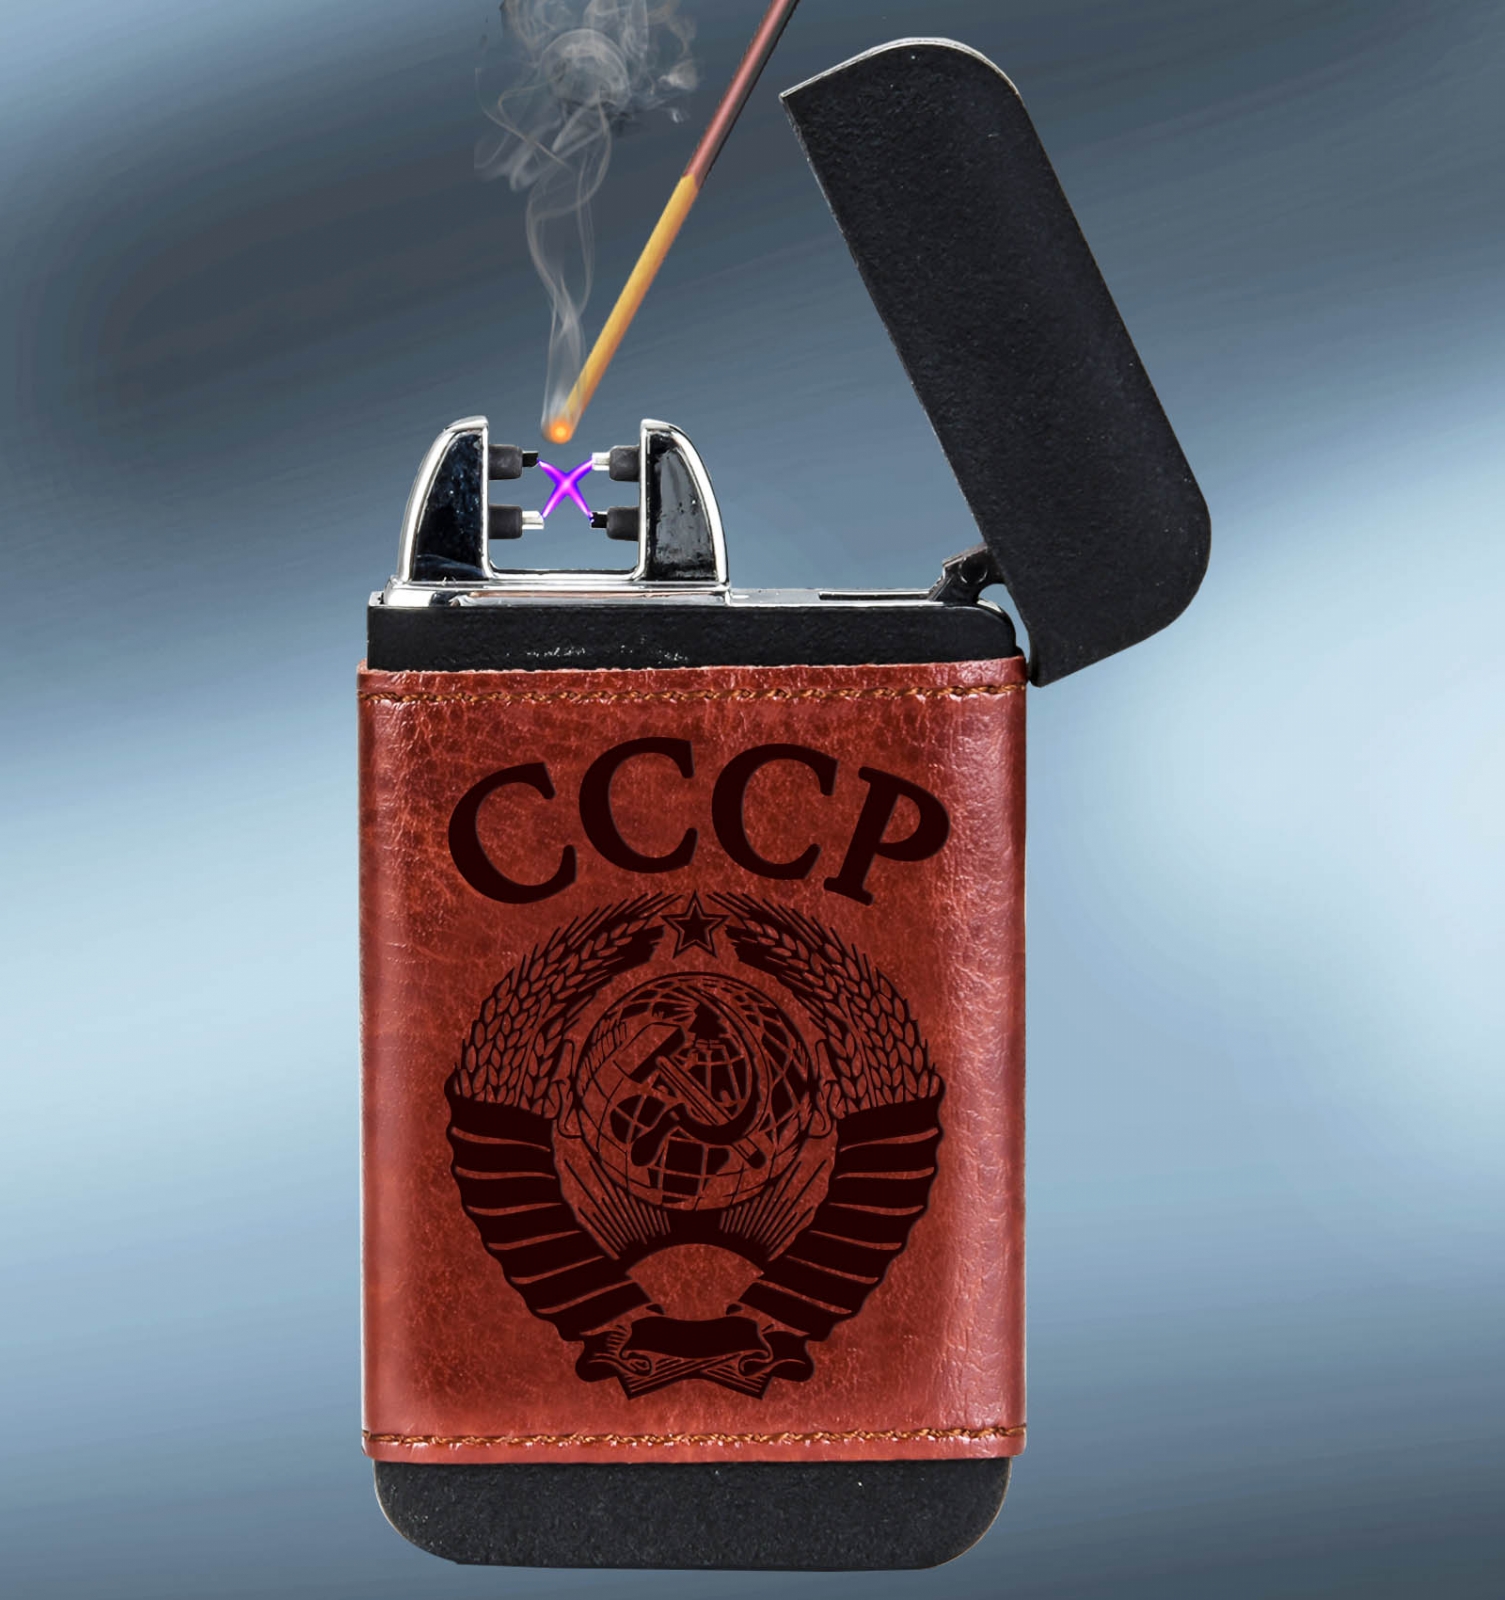 Тактическая зажигалка Power Bank с гербом СССР 